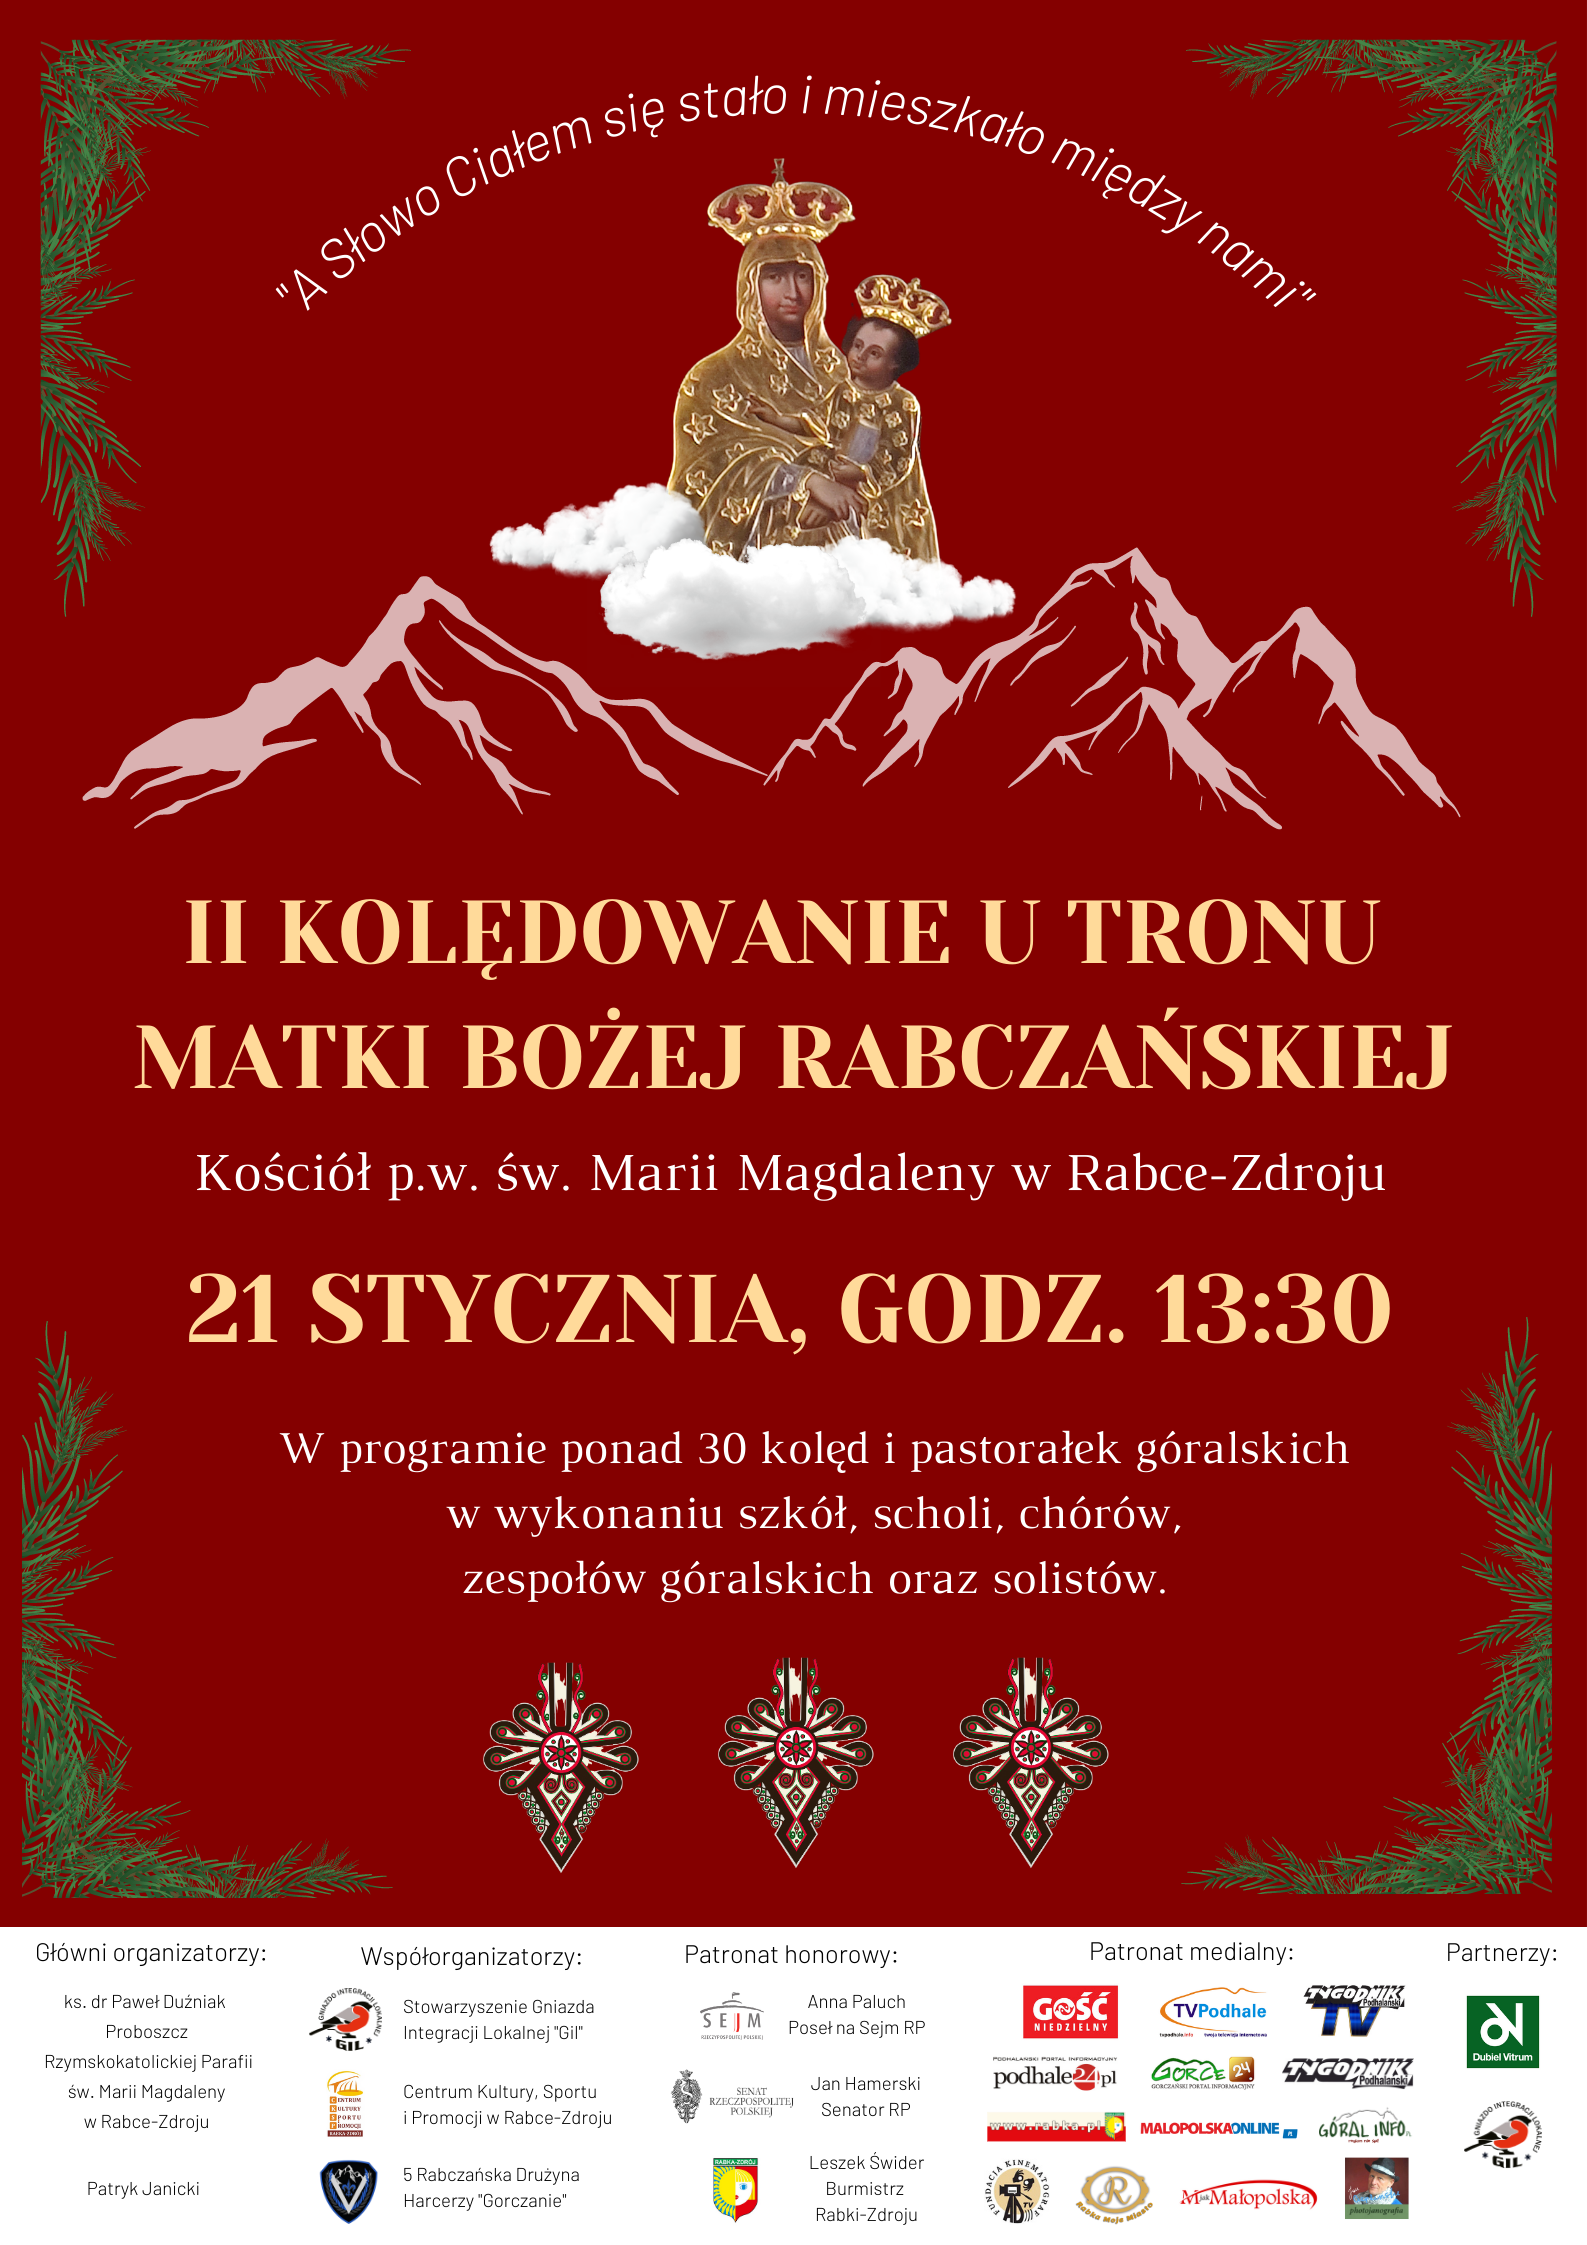 Plakat promujący wydarzenie II kolędowanie u tronu Matki Bożej Rabczańskiej